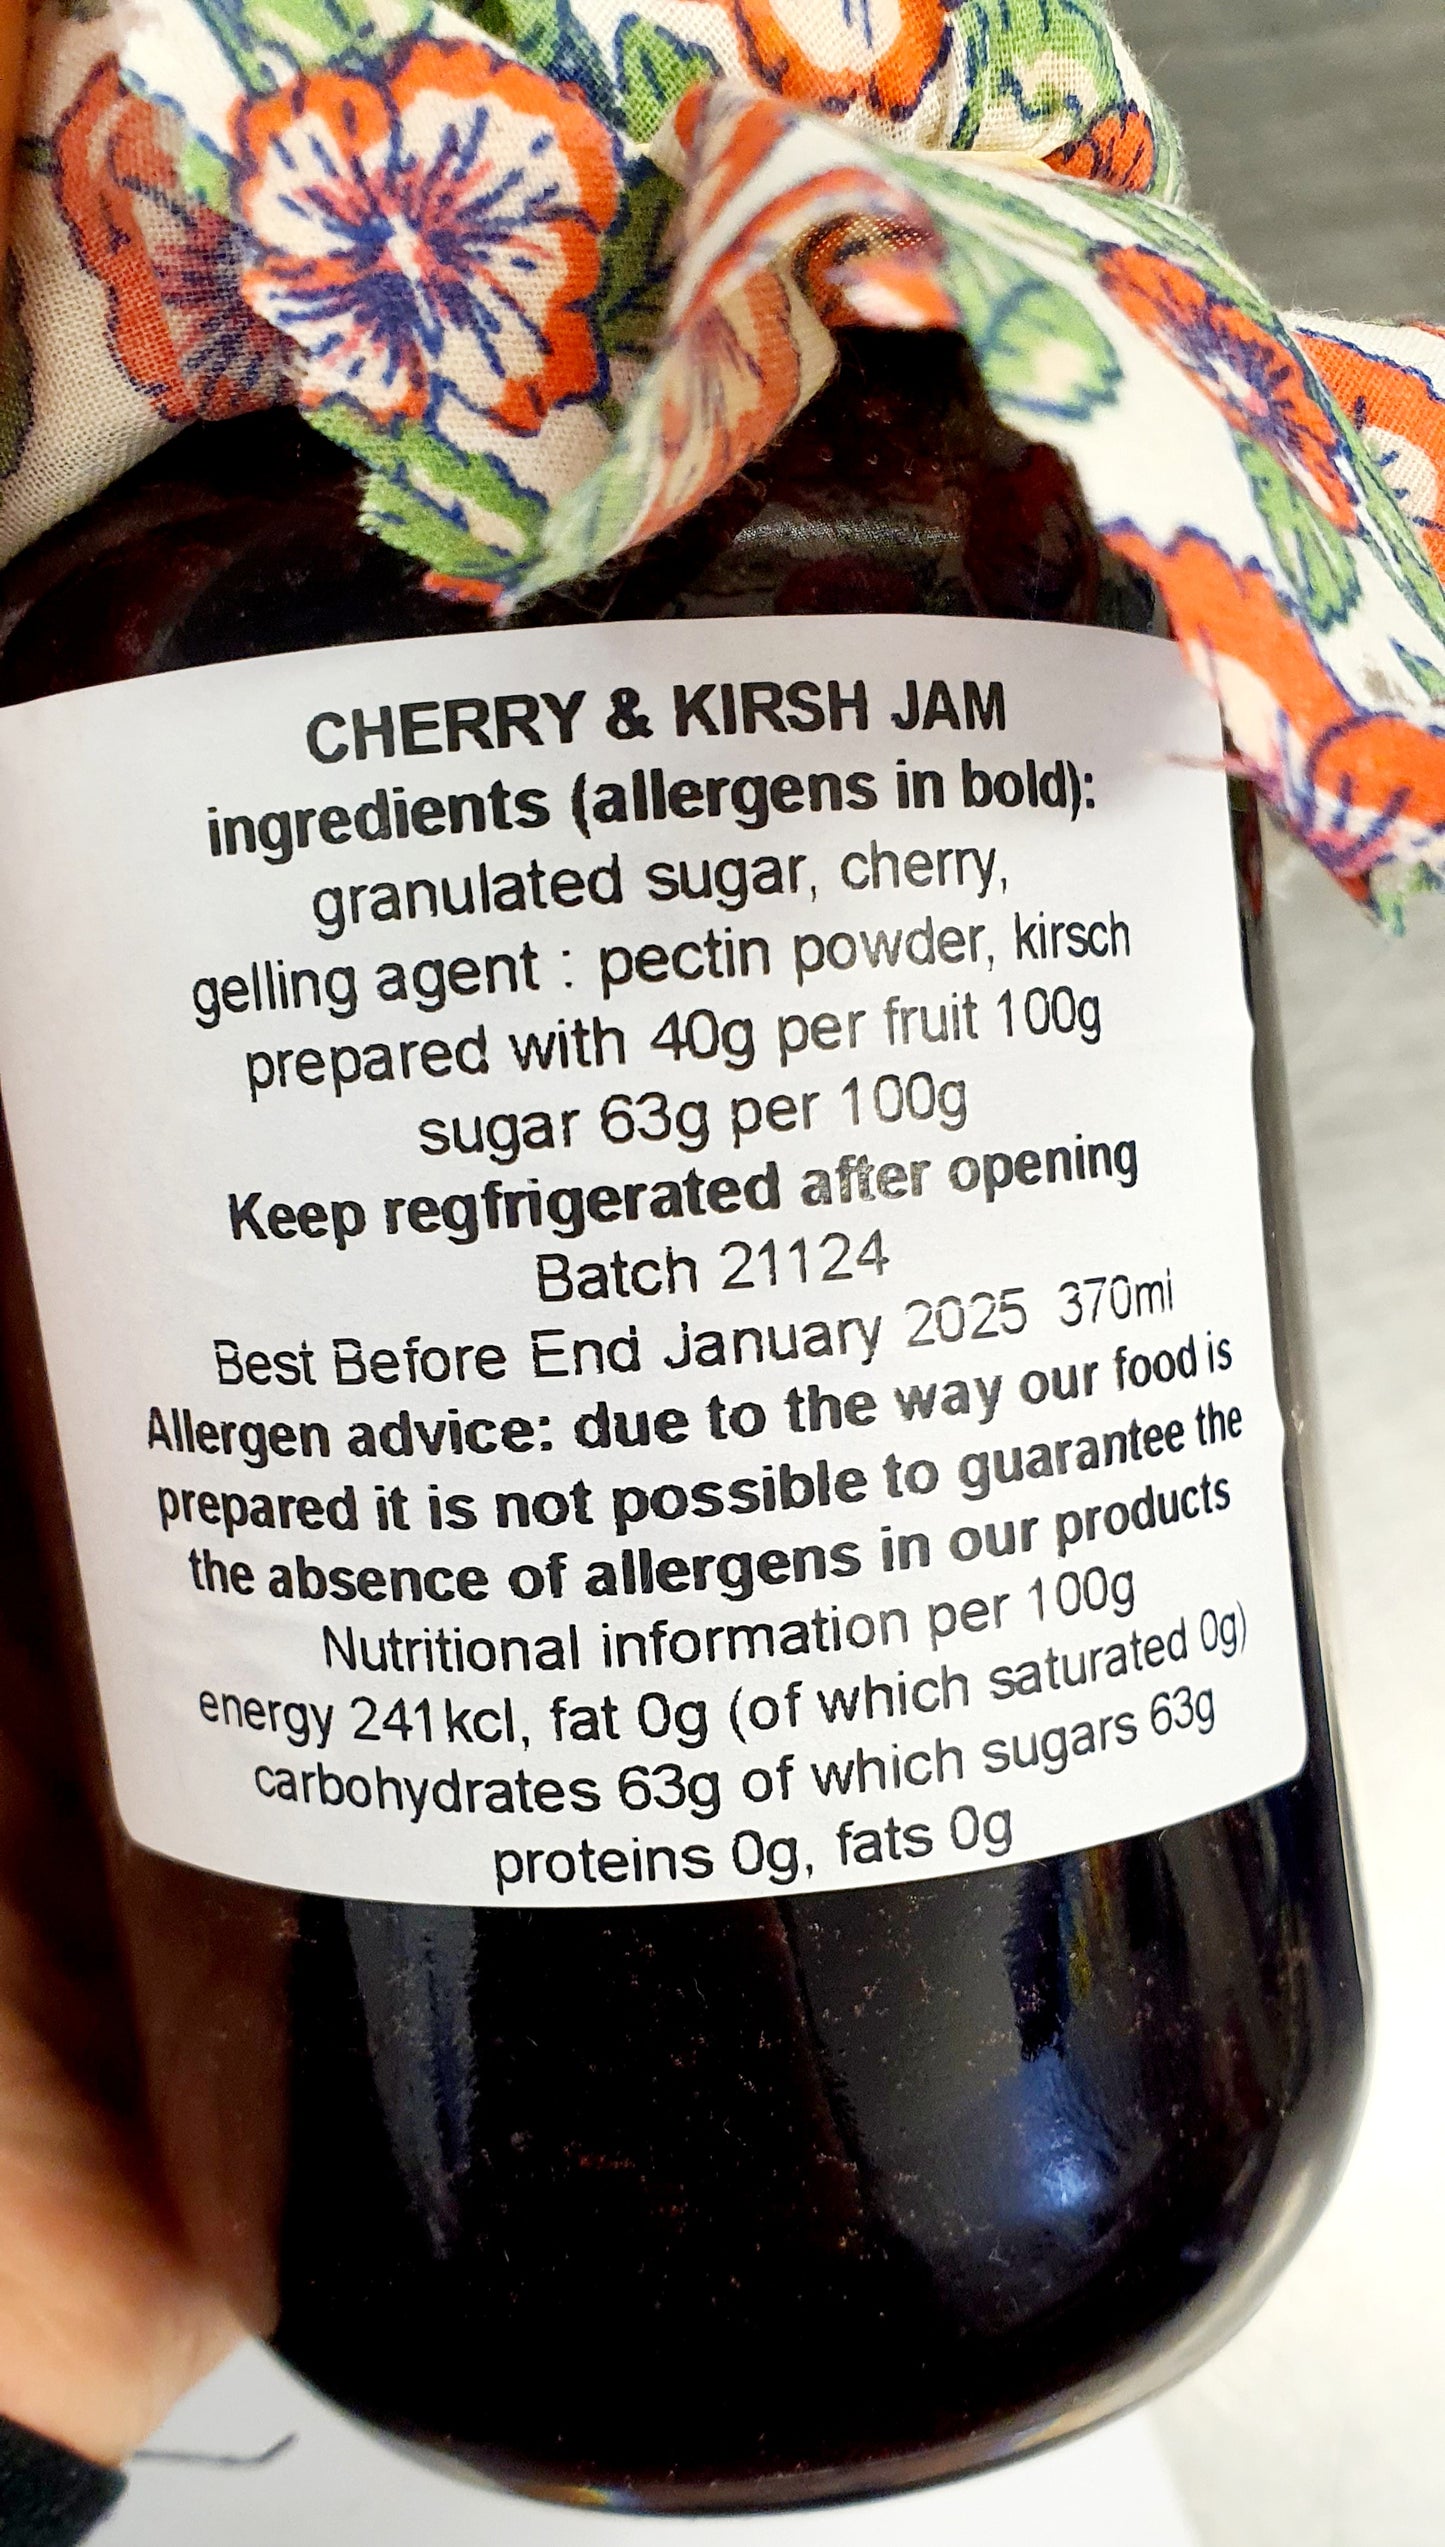 Cherry & Kirsch Jam